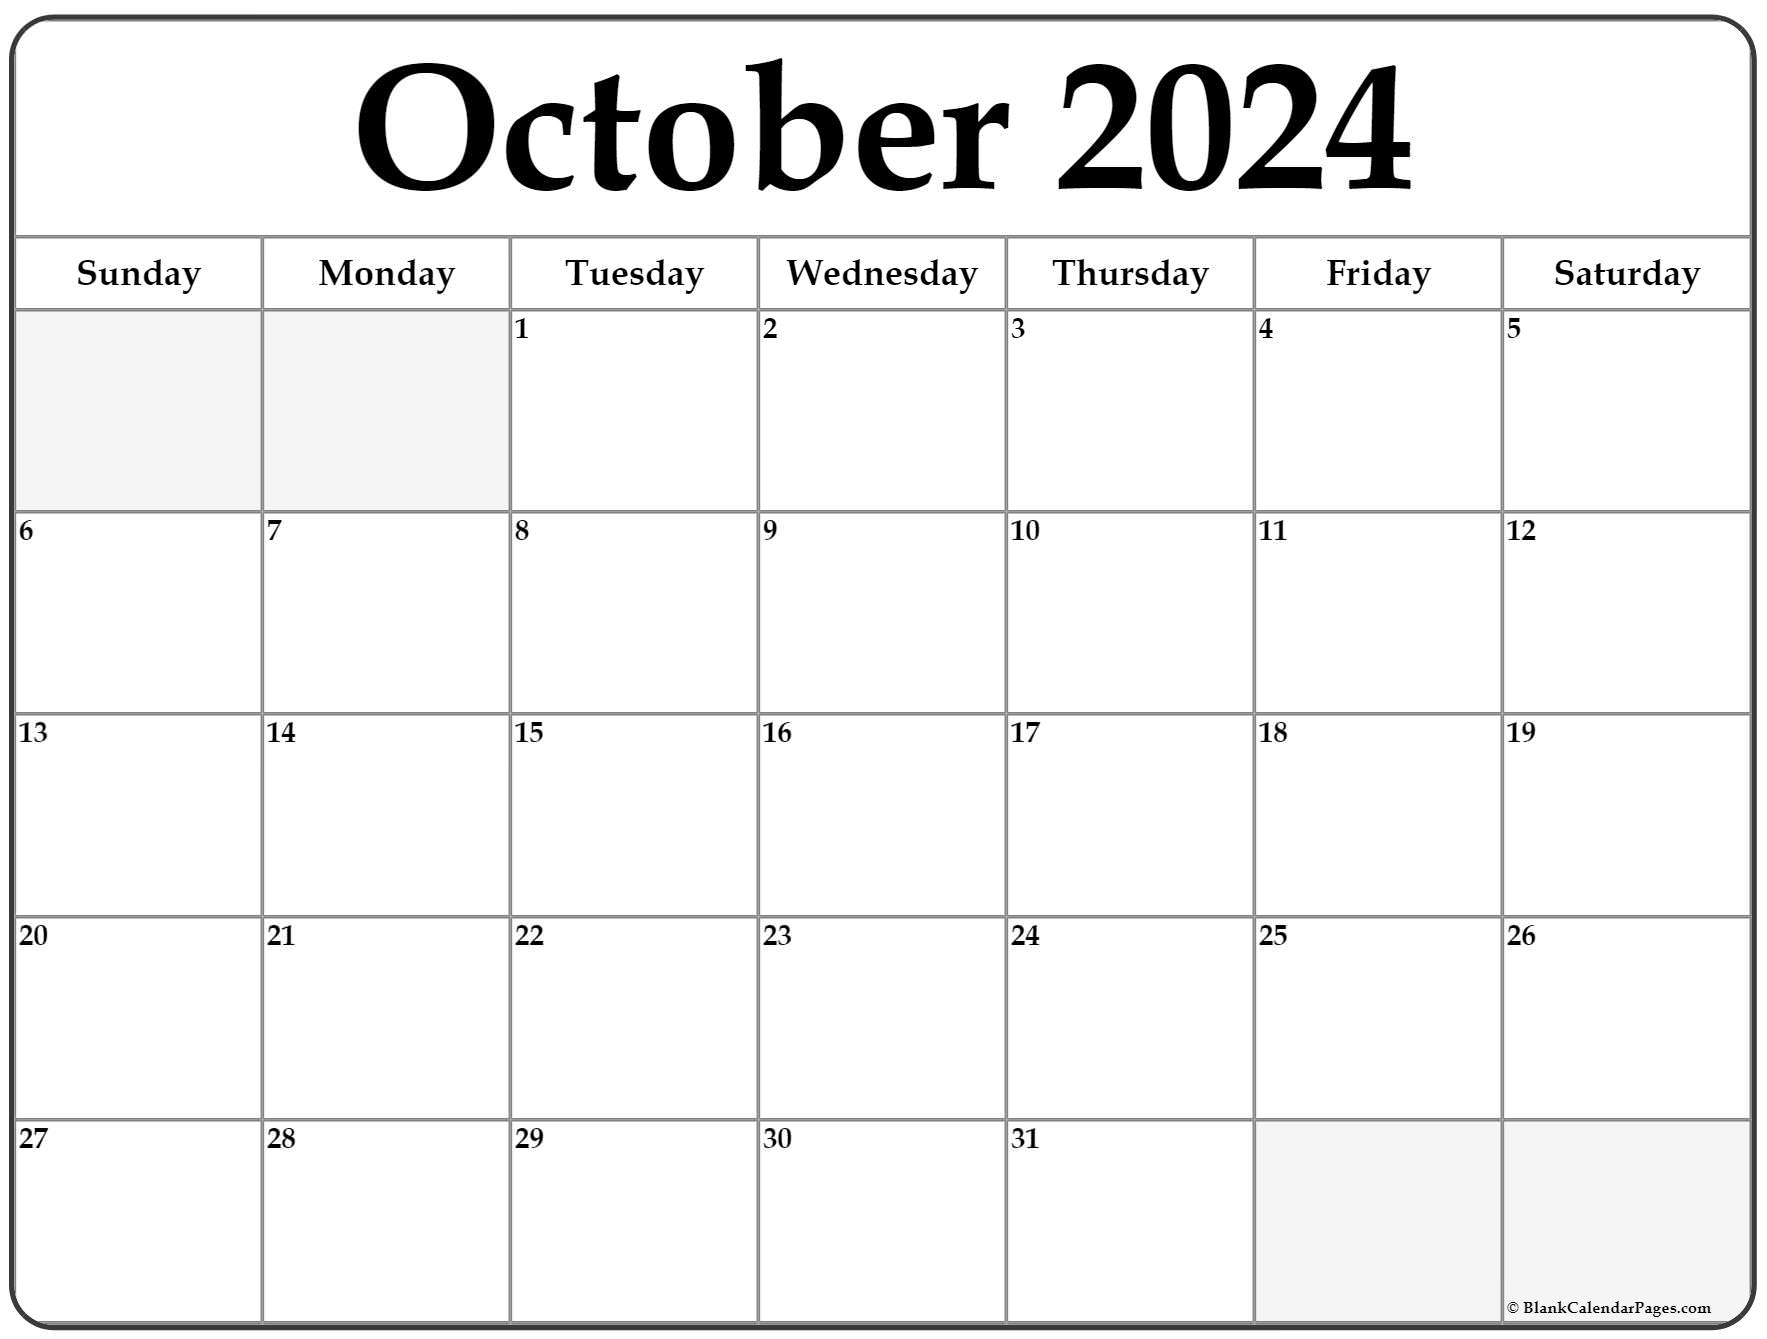 October 2022 Calendar Page October 2022 Calendar | Free Printable Calendar Templates